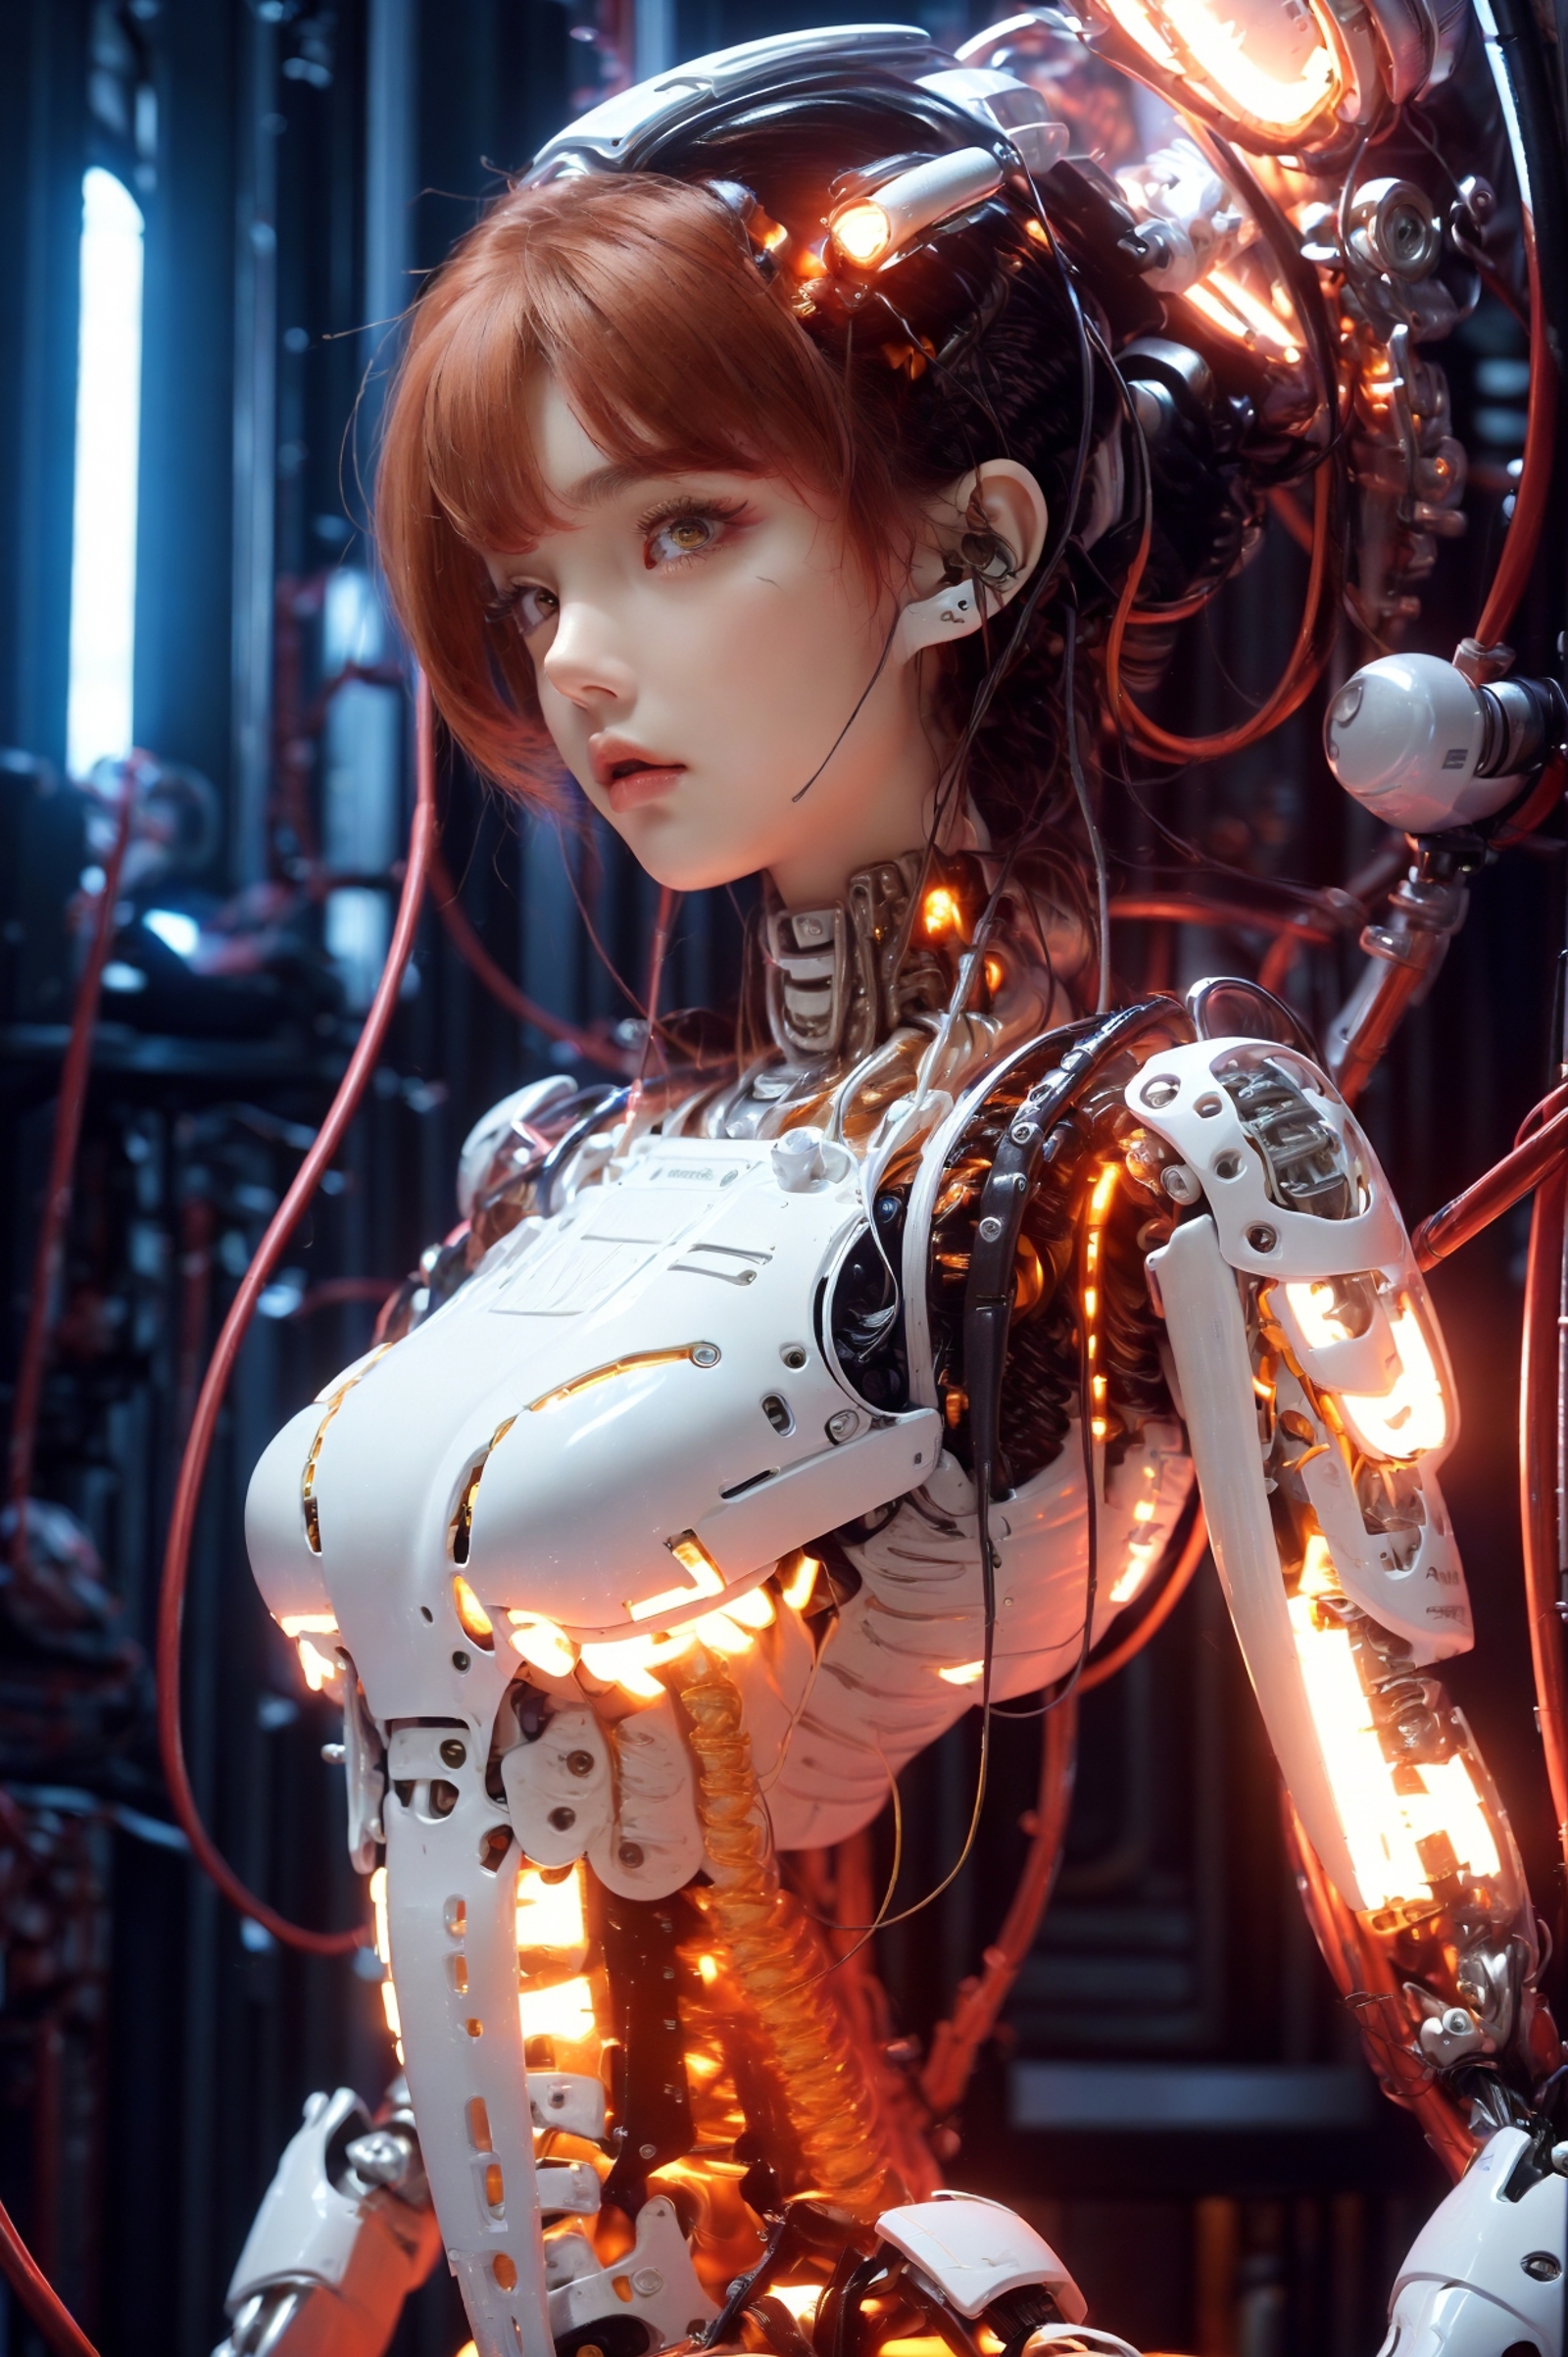 AI model image by XRYCJ